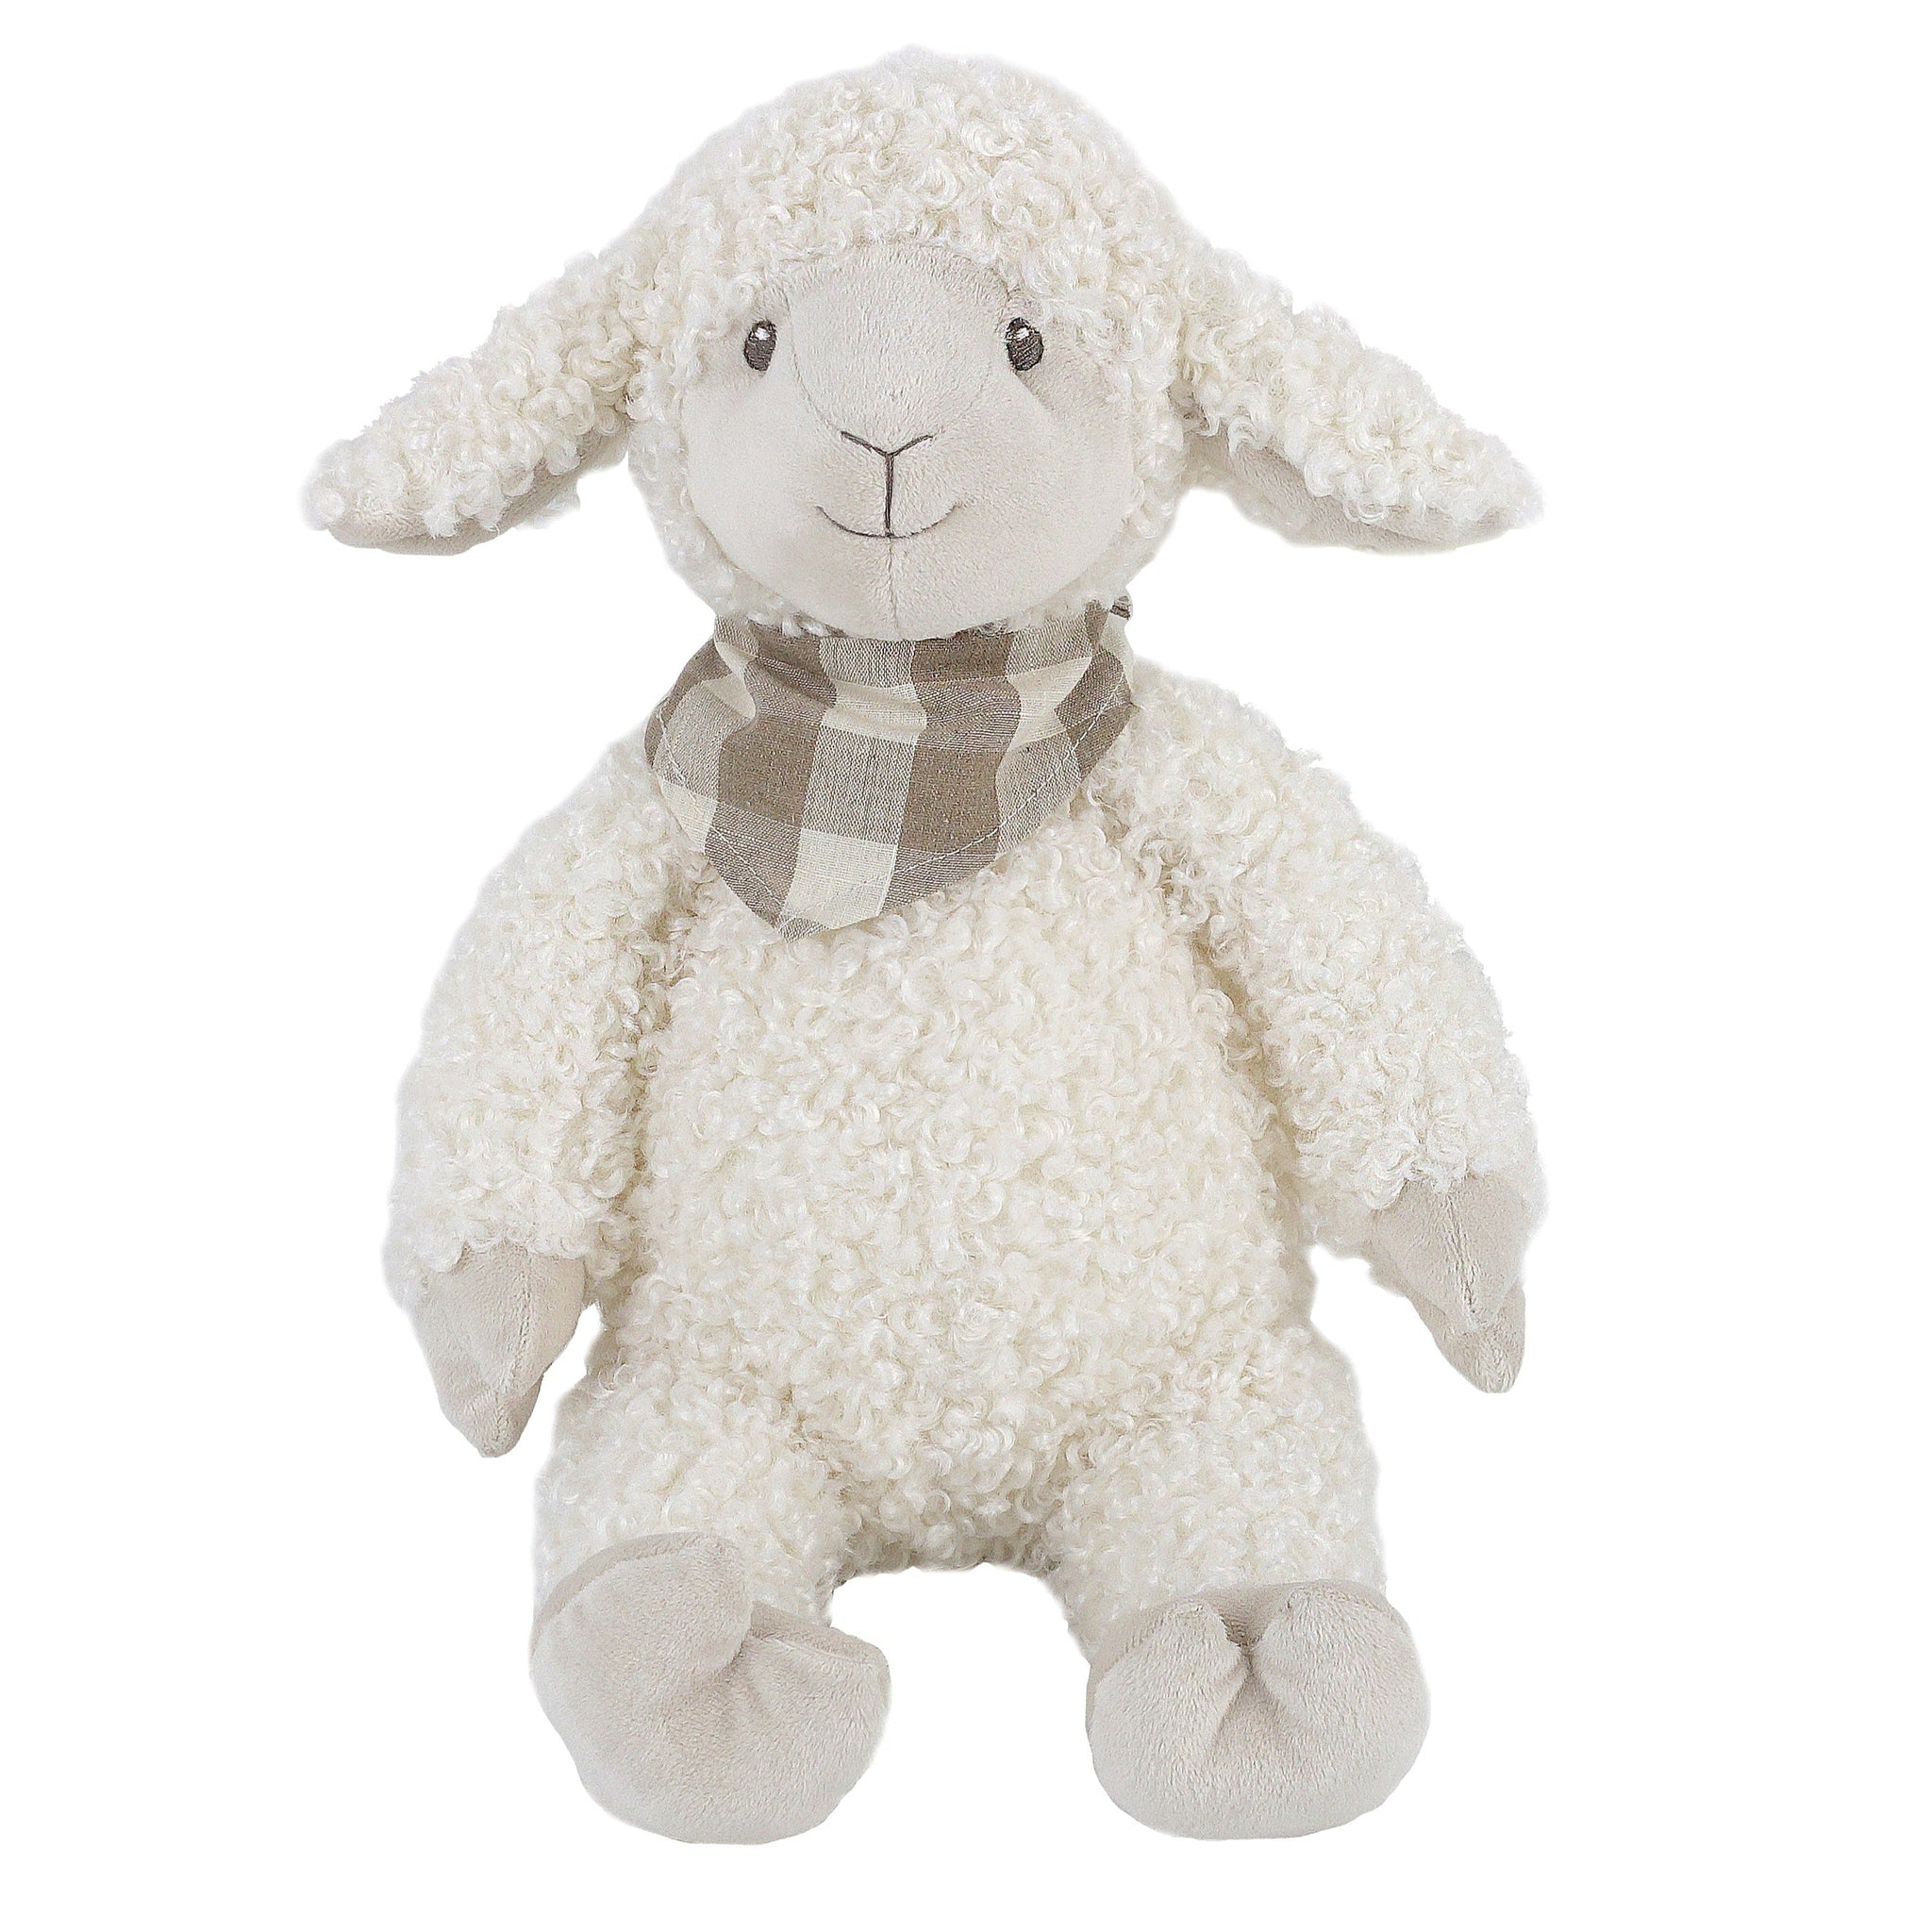 Lafayette The Lamb Plush Toy - HoneyBug 